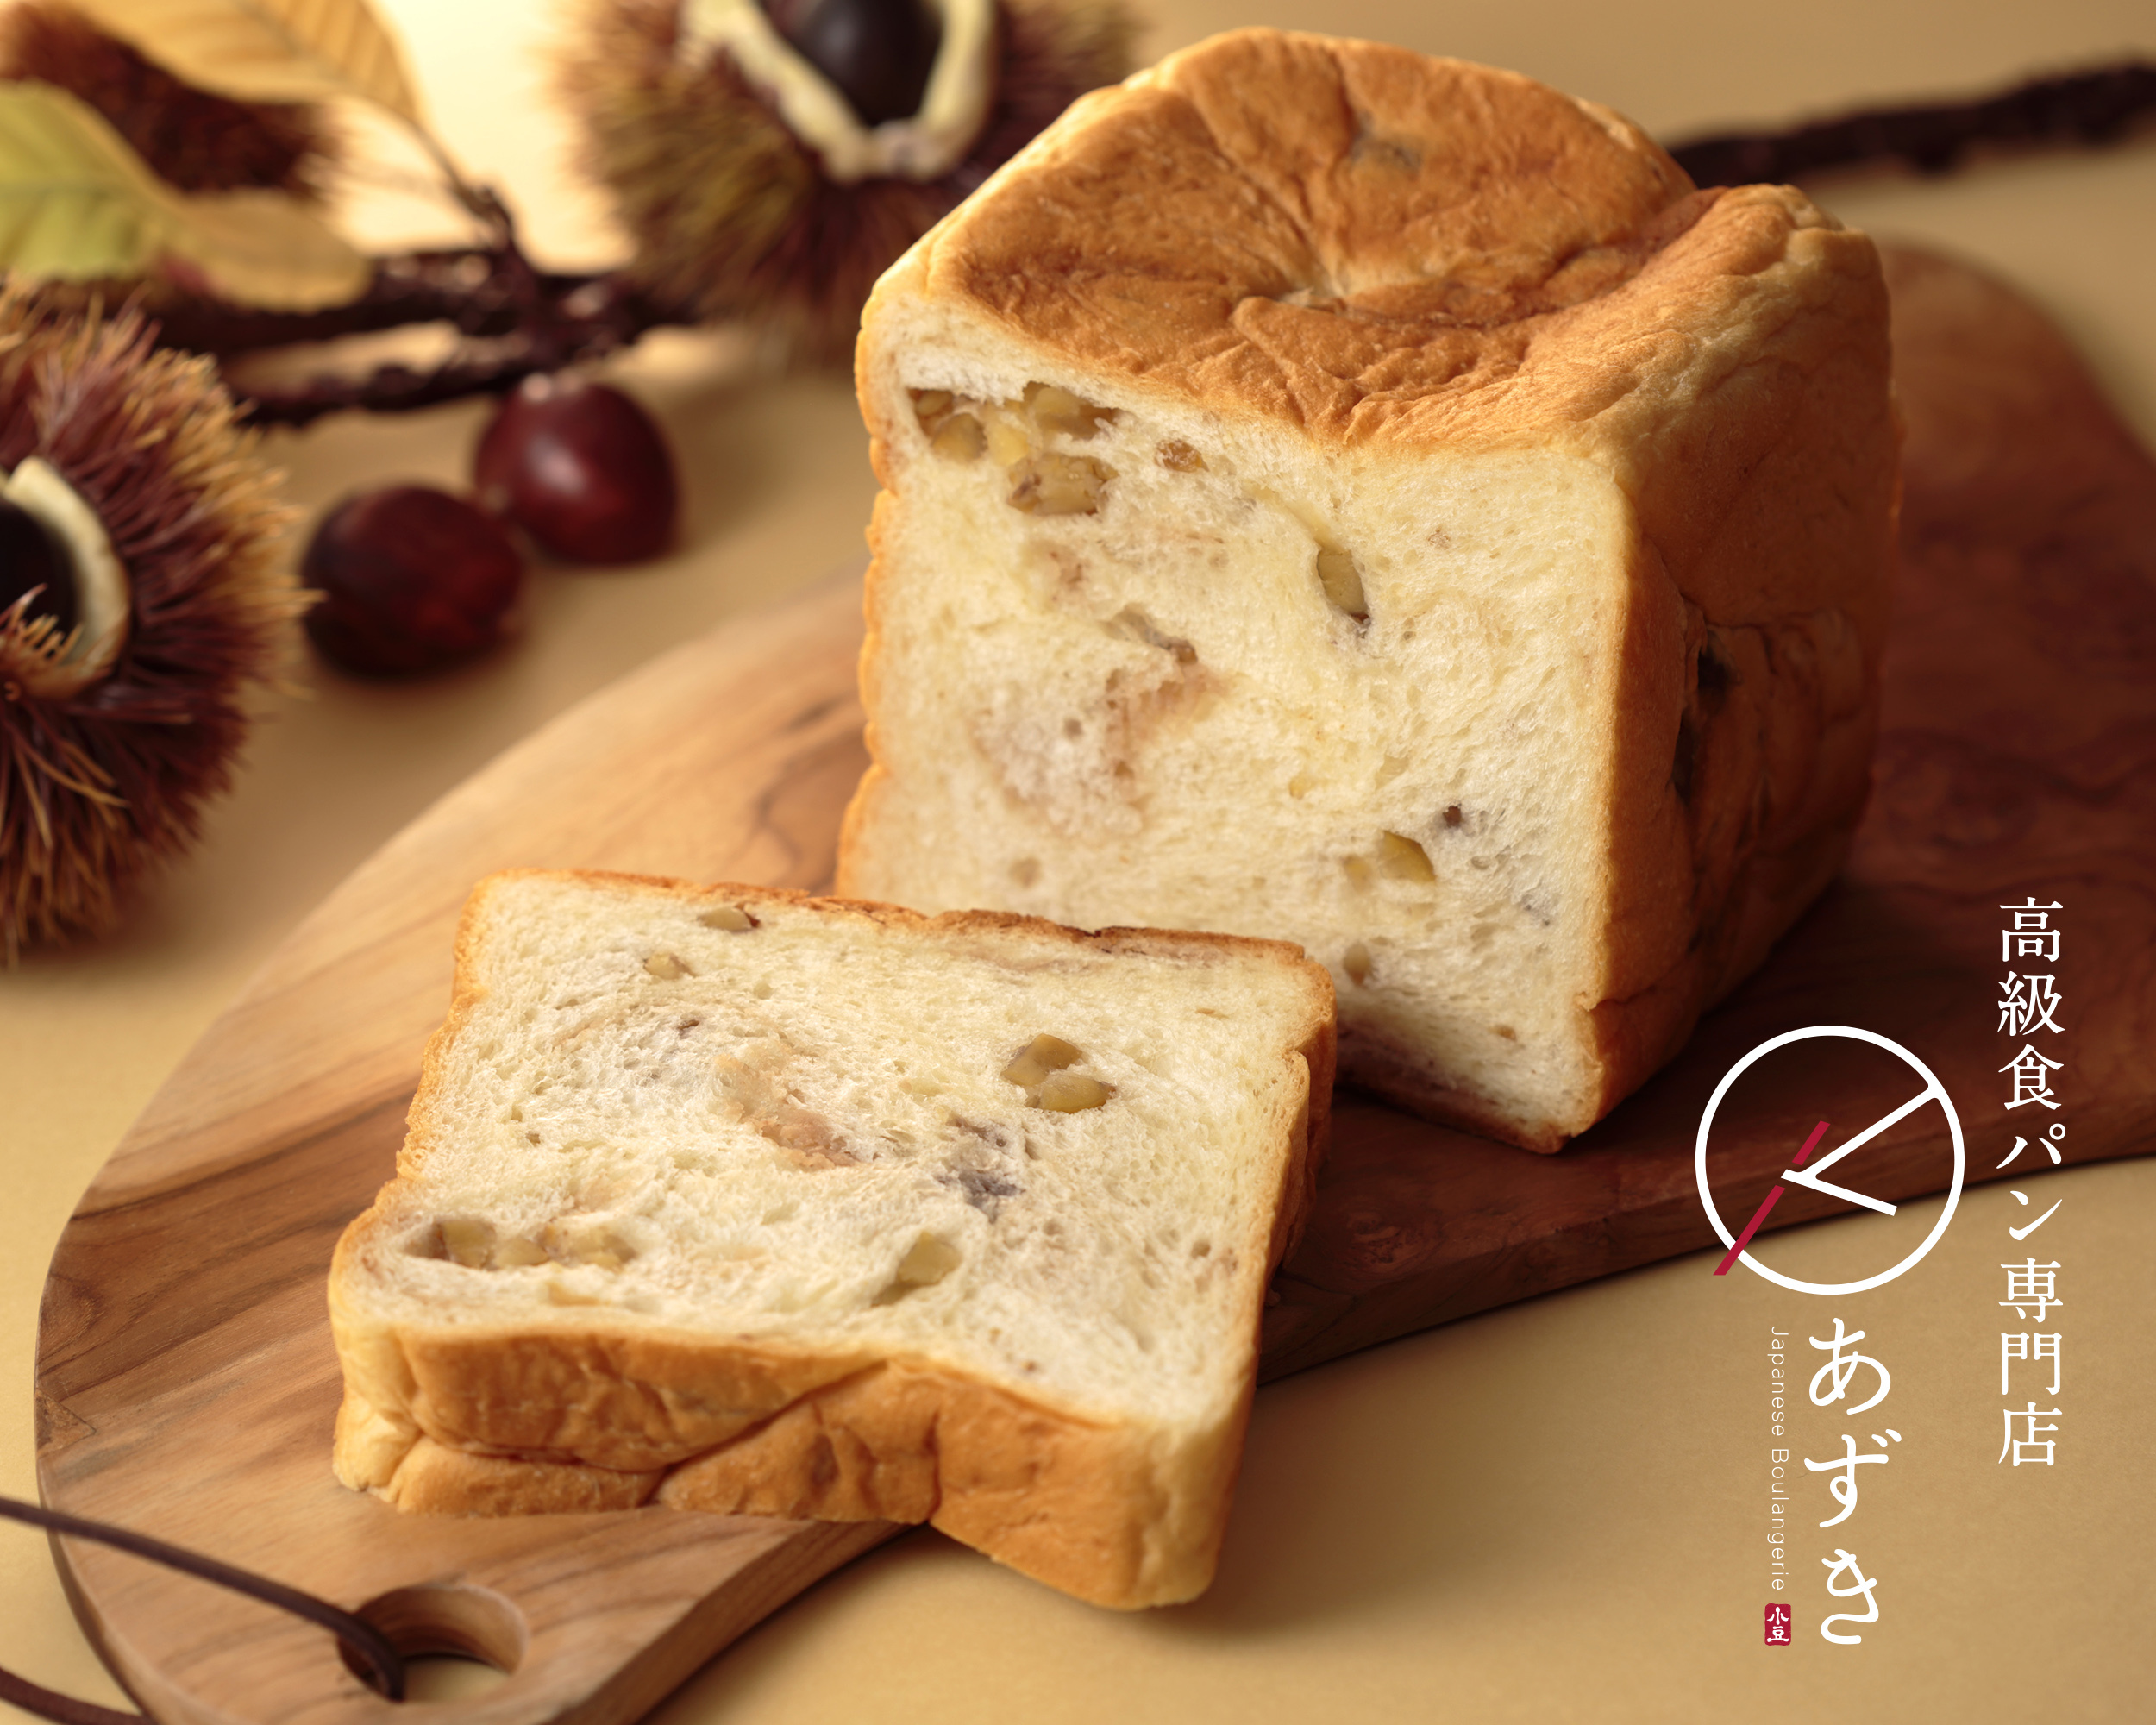 高級食パン専門店『あずき』は、季節の上品な味わいの「KURI食パン」を